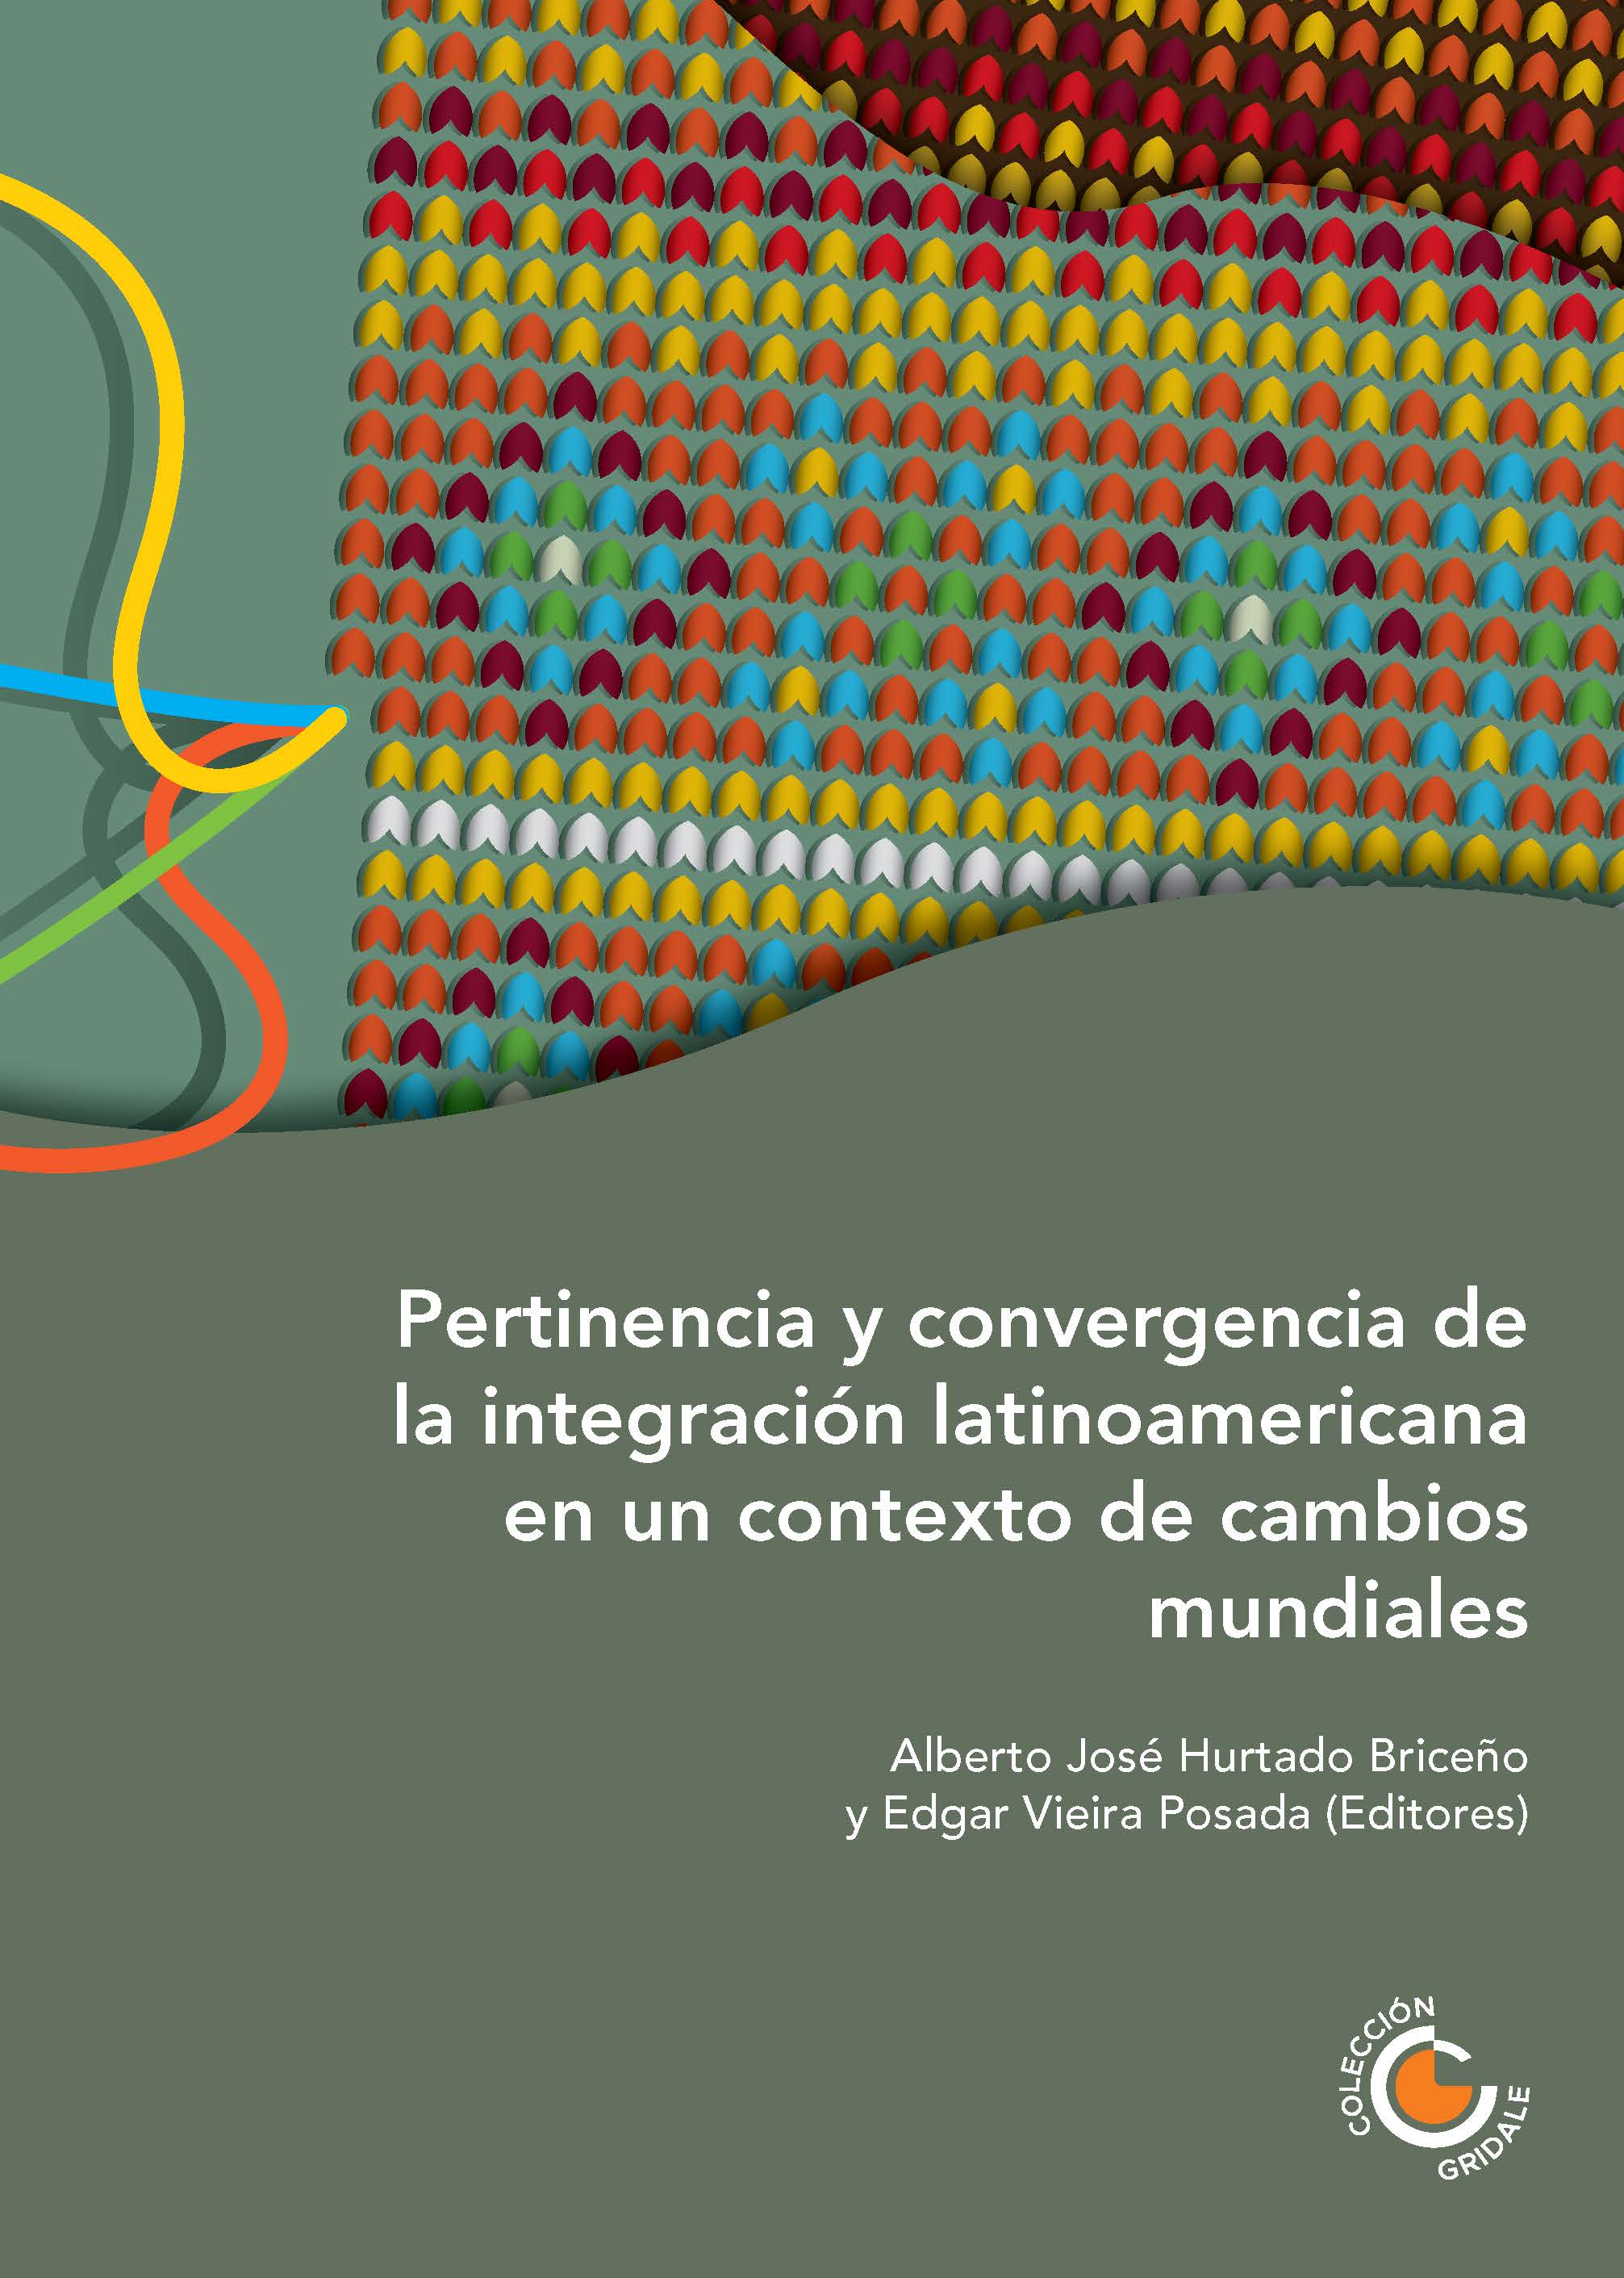 Portada del libro Pertinencia y convergencia de la integración latinoamericana en un contexto de cambios mundiales